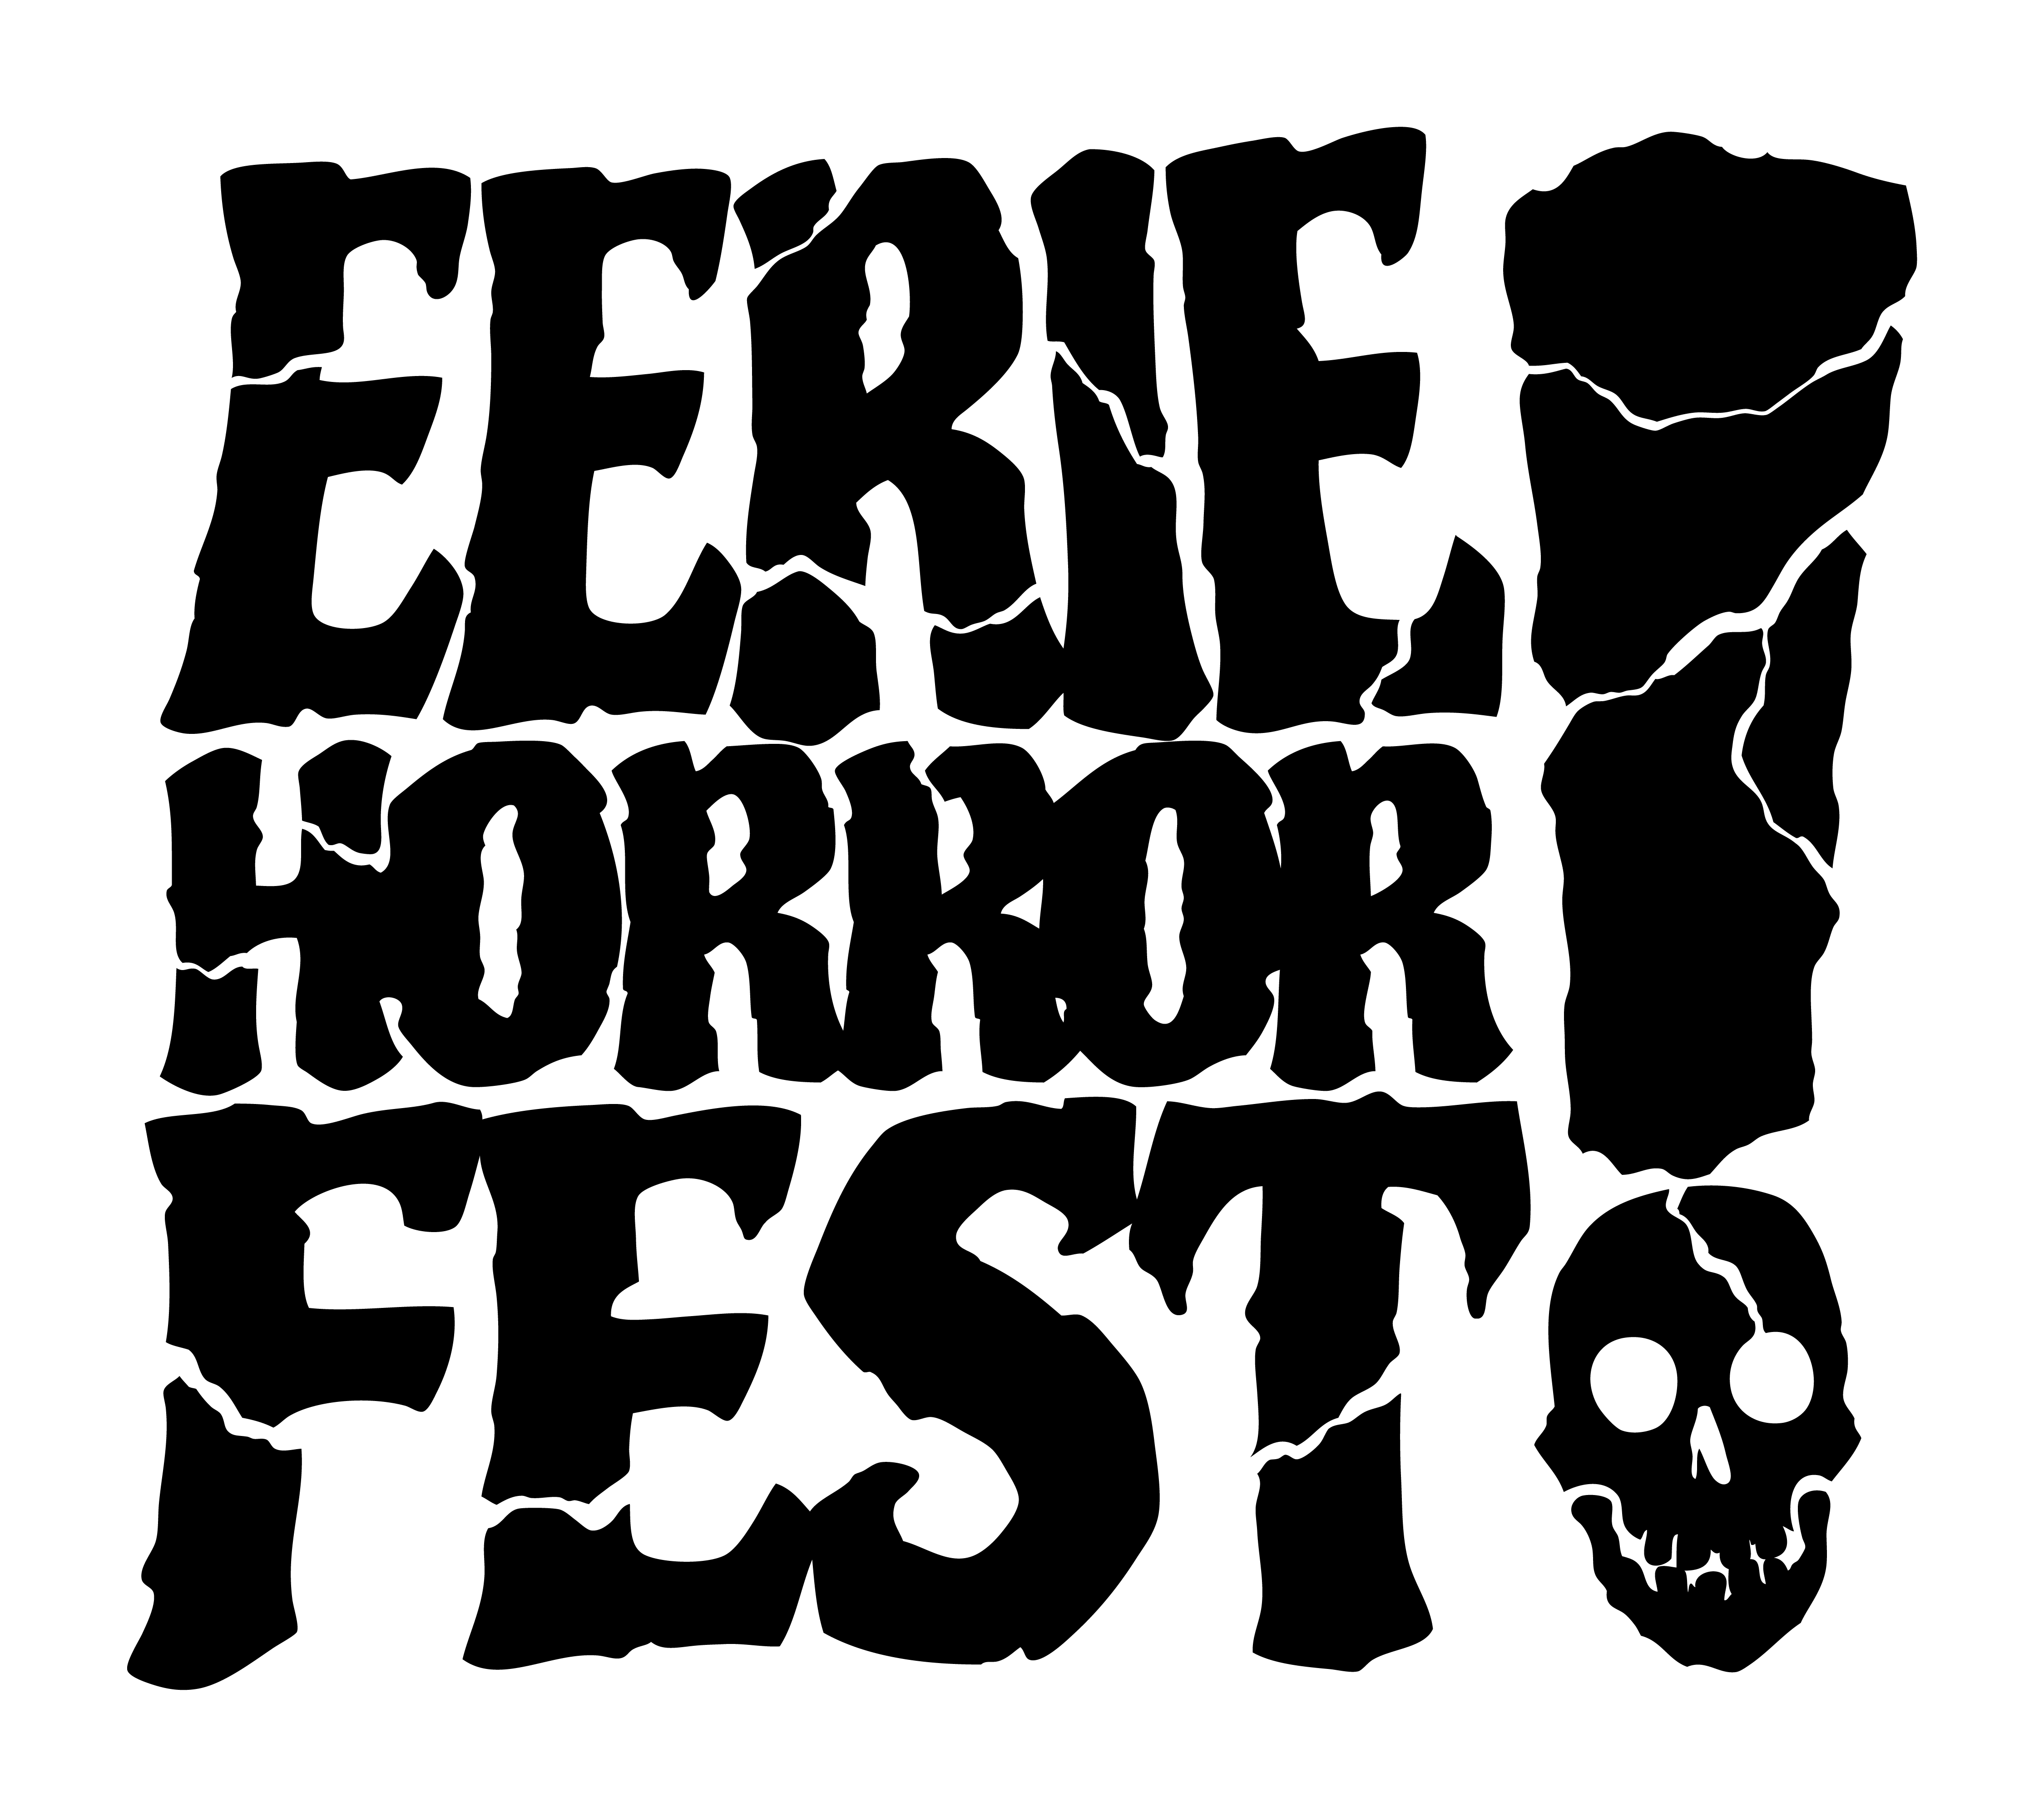 Eerie Horror Film Festival